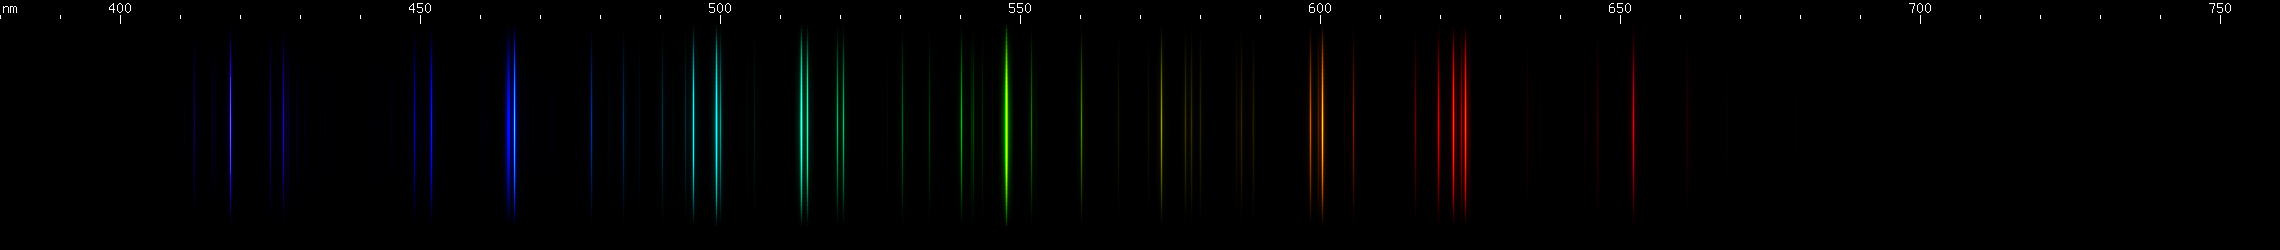 Spectral Lines of Lutetium